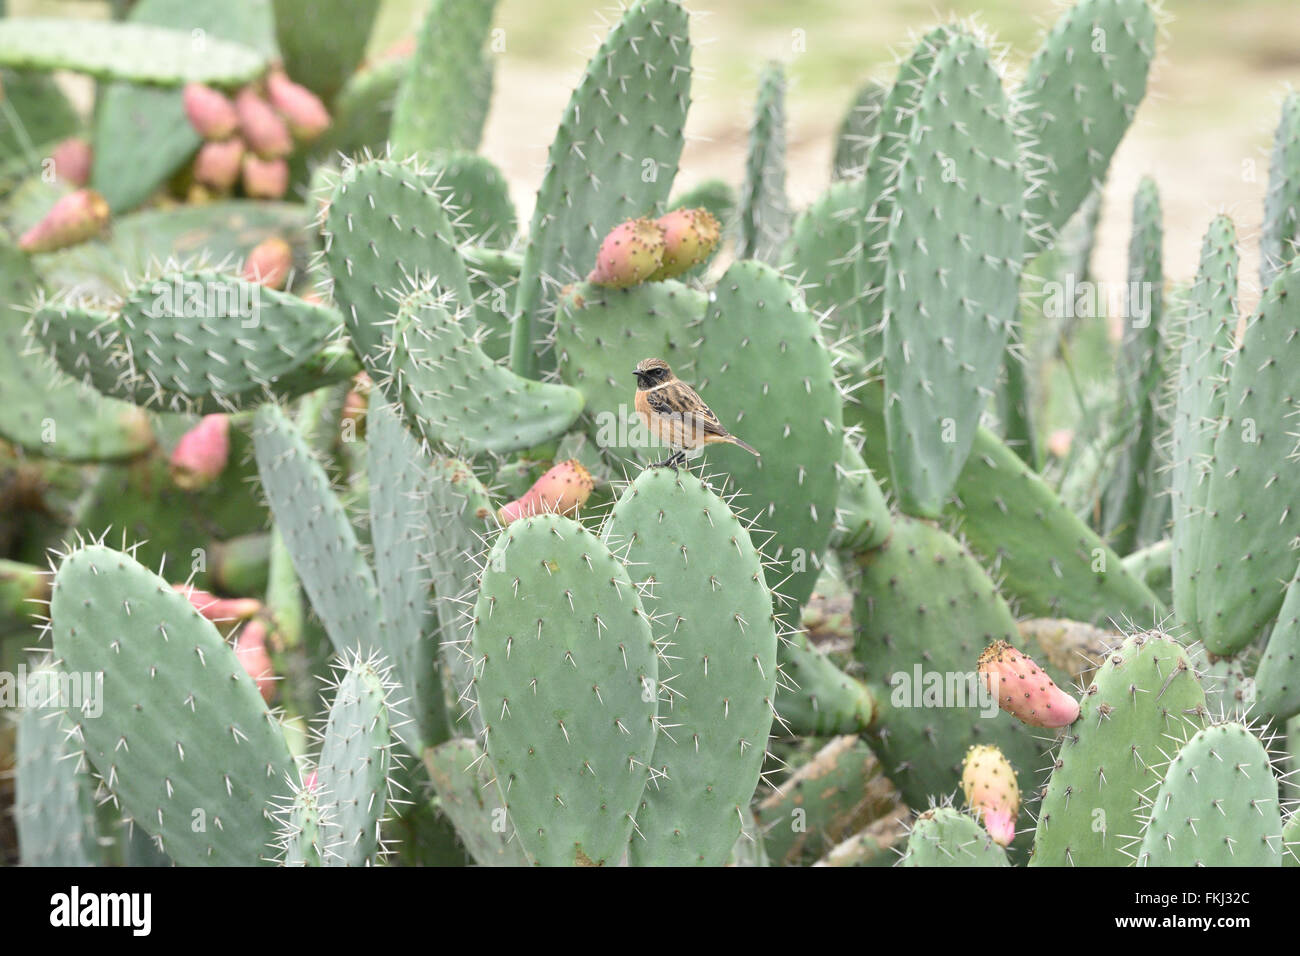 Un mâle en plumage d'hiver stonechat perché sur un cactus de fructification, dans le sud de l'Espagne. Banque D'Images